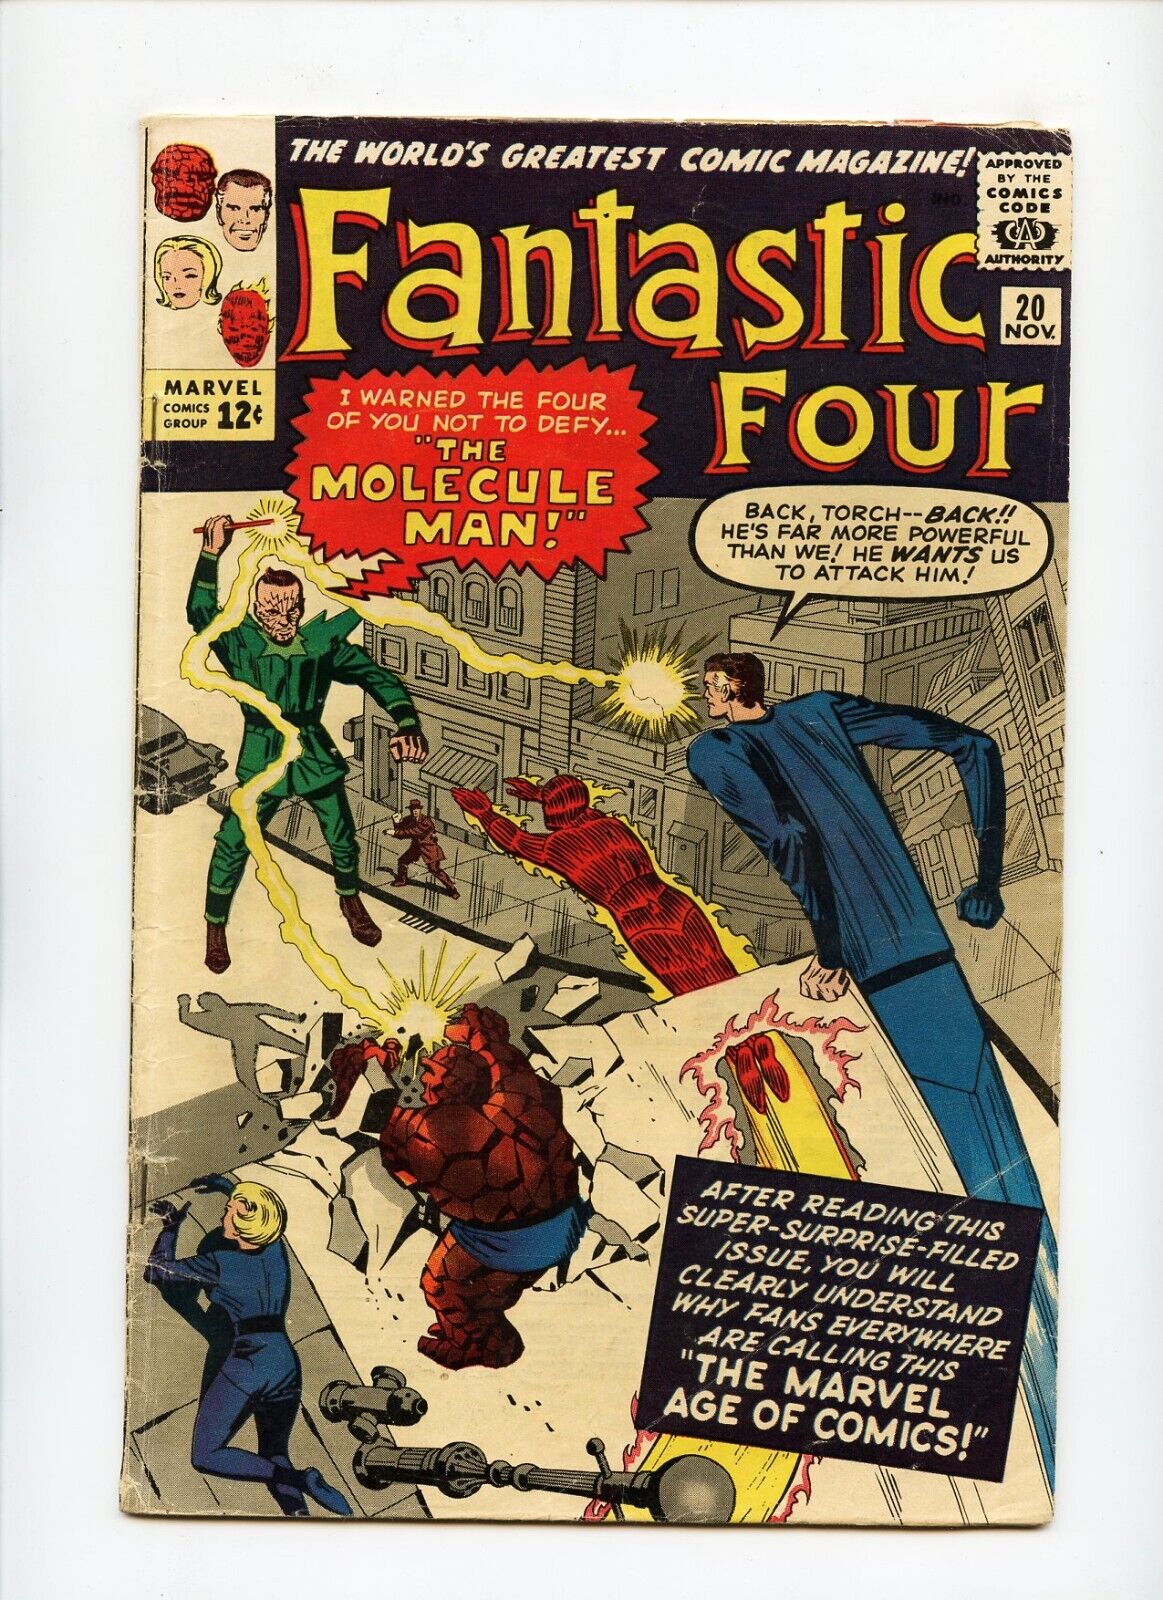 Fantastic Four #20 Marvel Comics